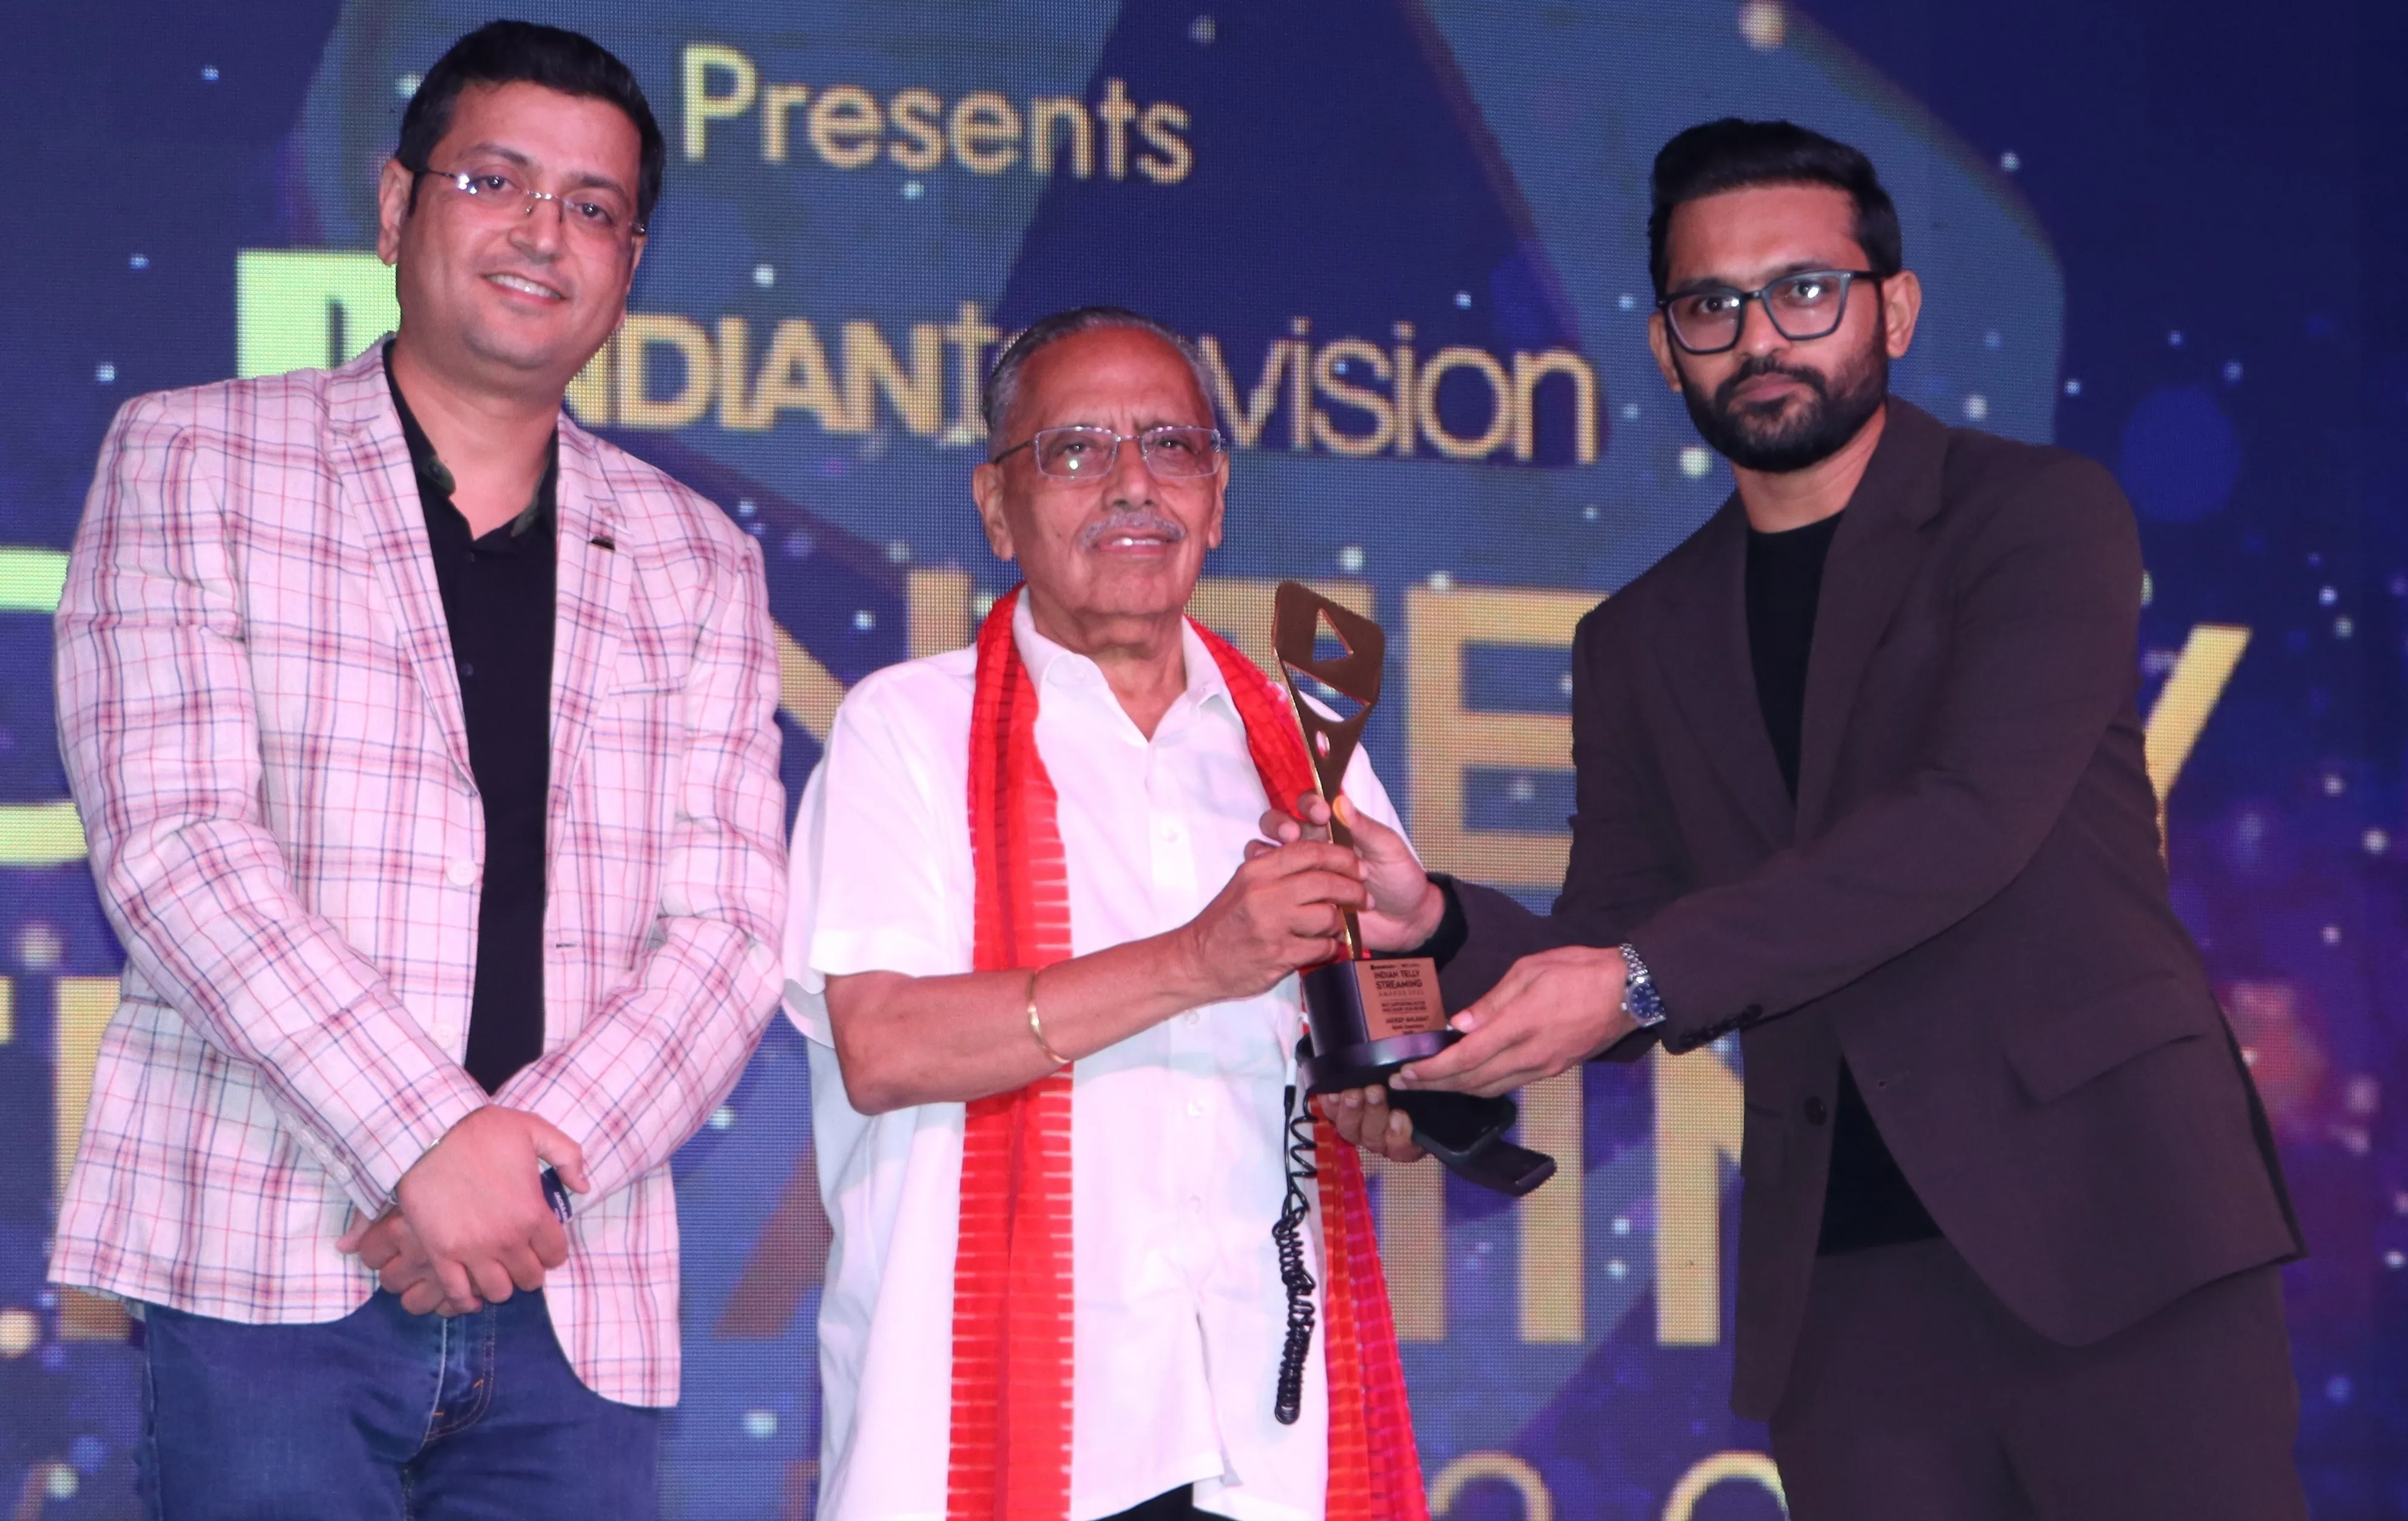 भारत 24 के सीईओ जगदीश चंद्र ने ITSA 2022 अवॉर्ड्स में मशहूर हस्तियों को सम्मानित किया